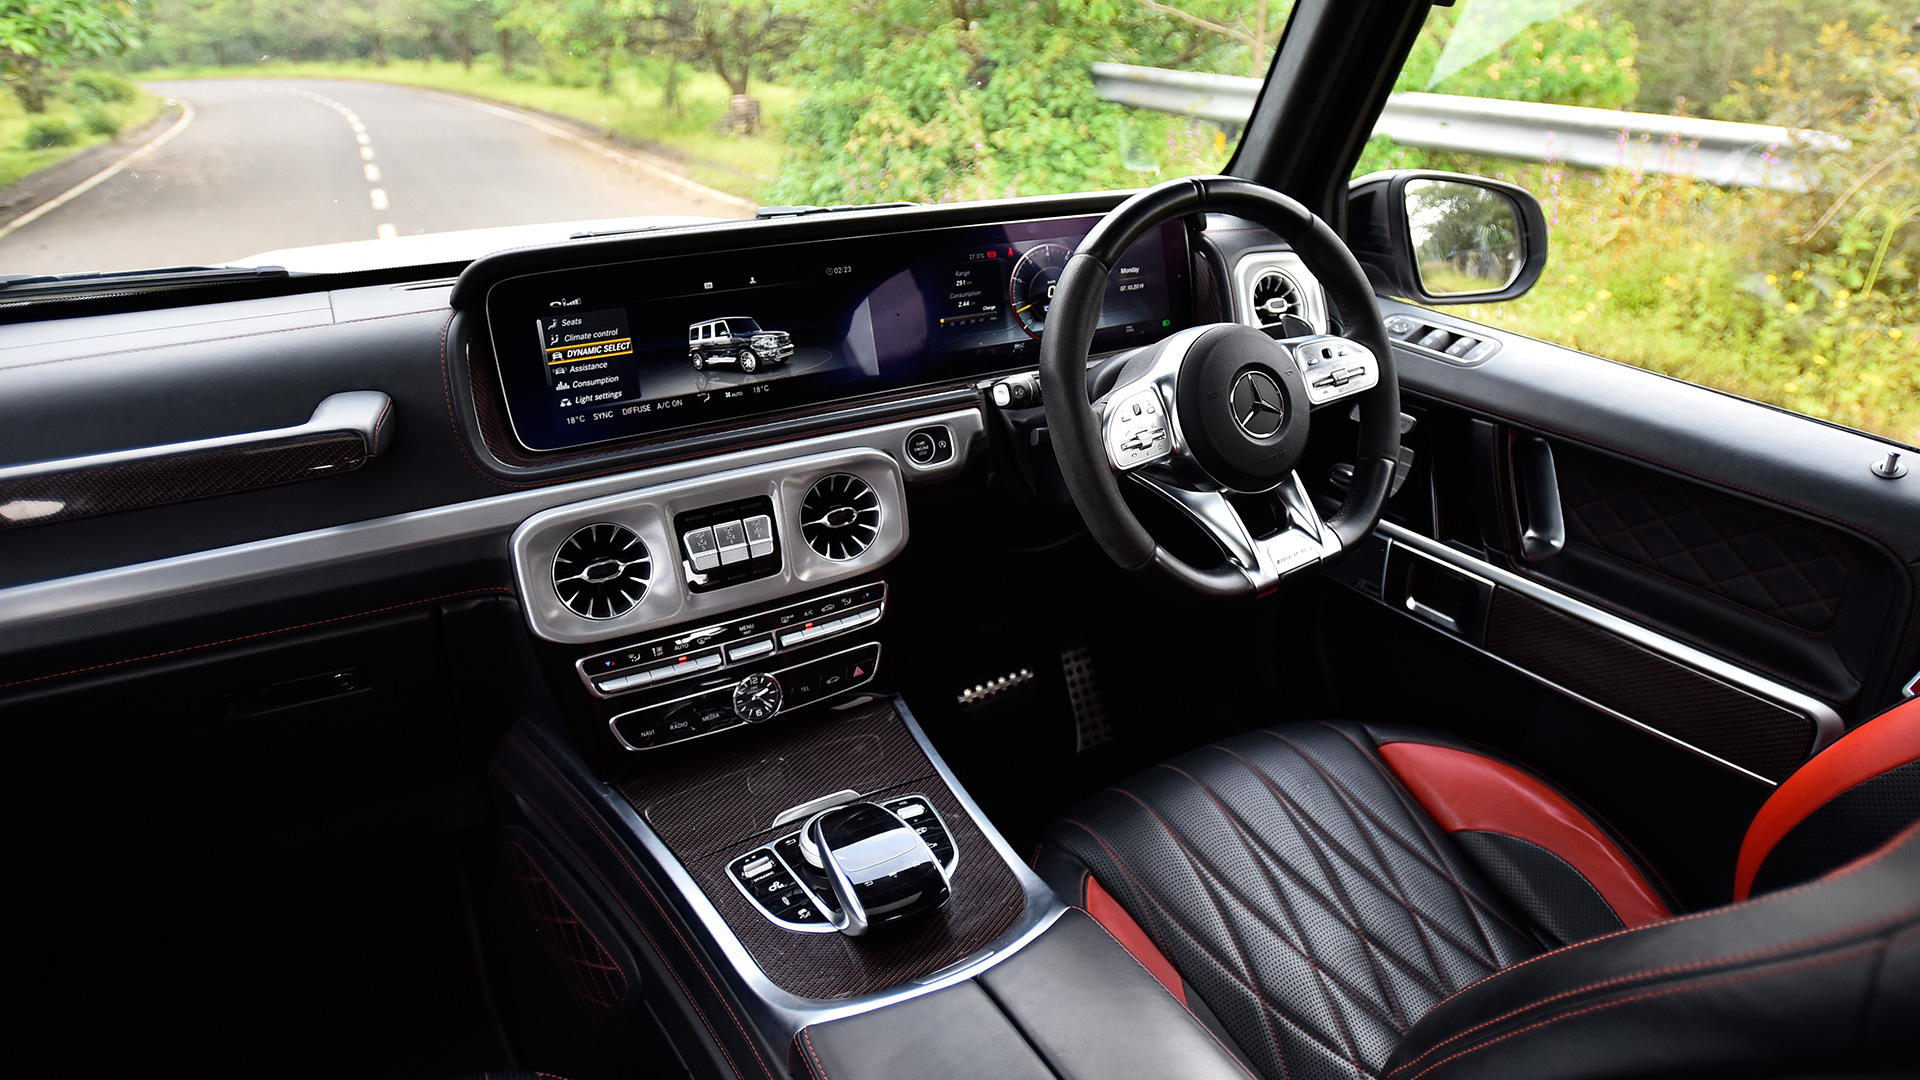 Mercedes Benz G-Class 2019 350d Interior